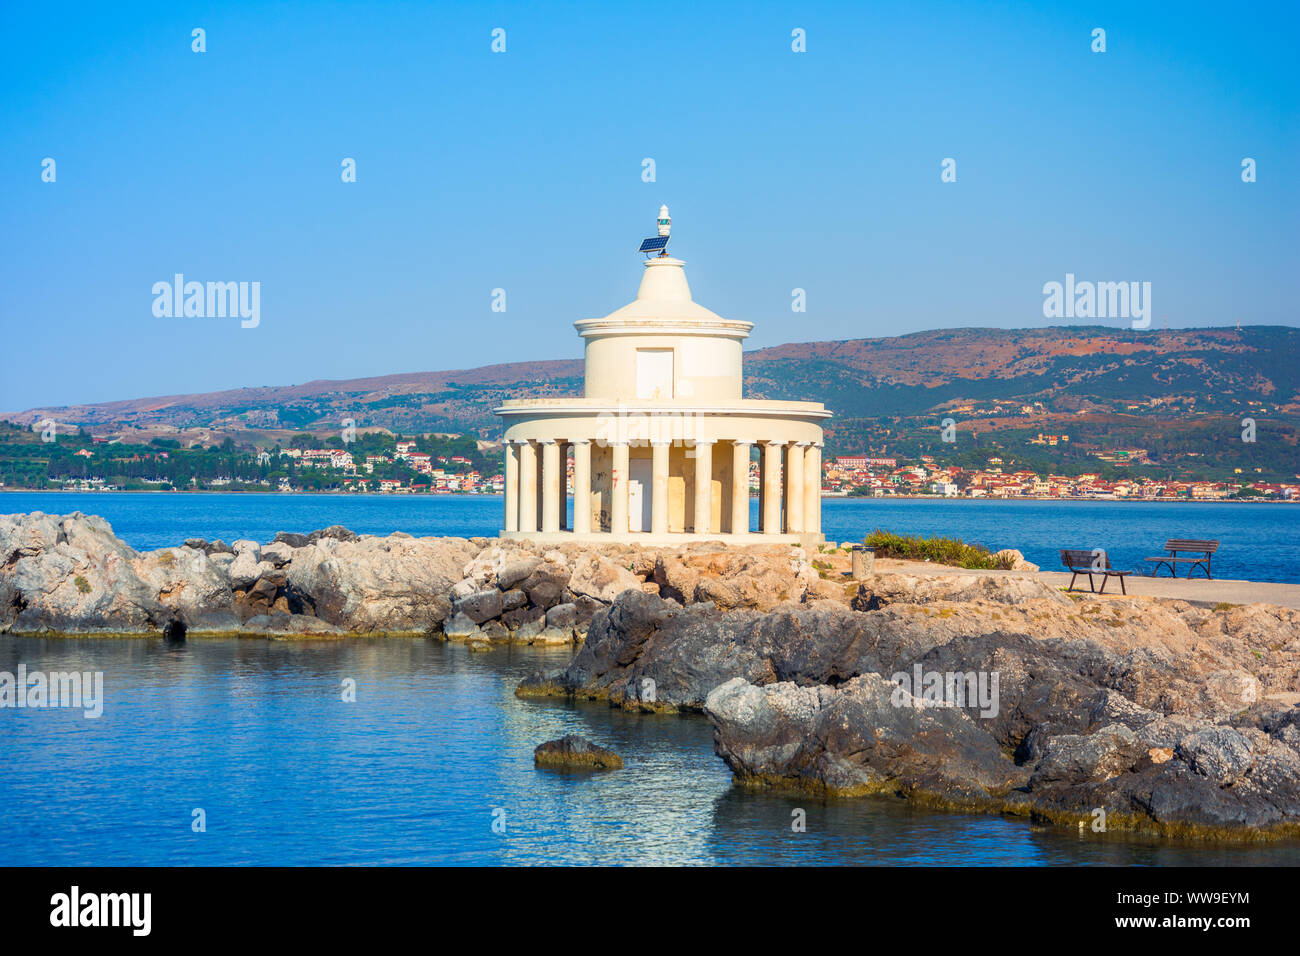 Splendida vista del faro di San Teodoro sull'isola di Cefalonia, Grecia Foto Stock